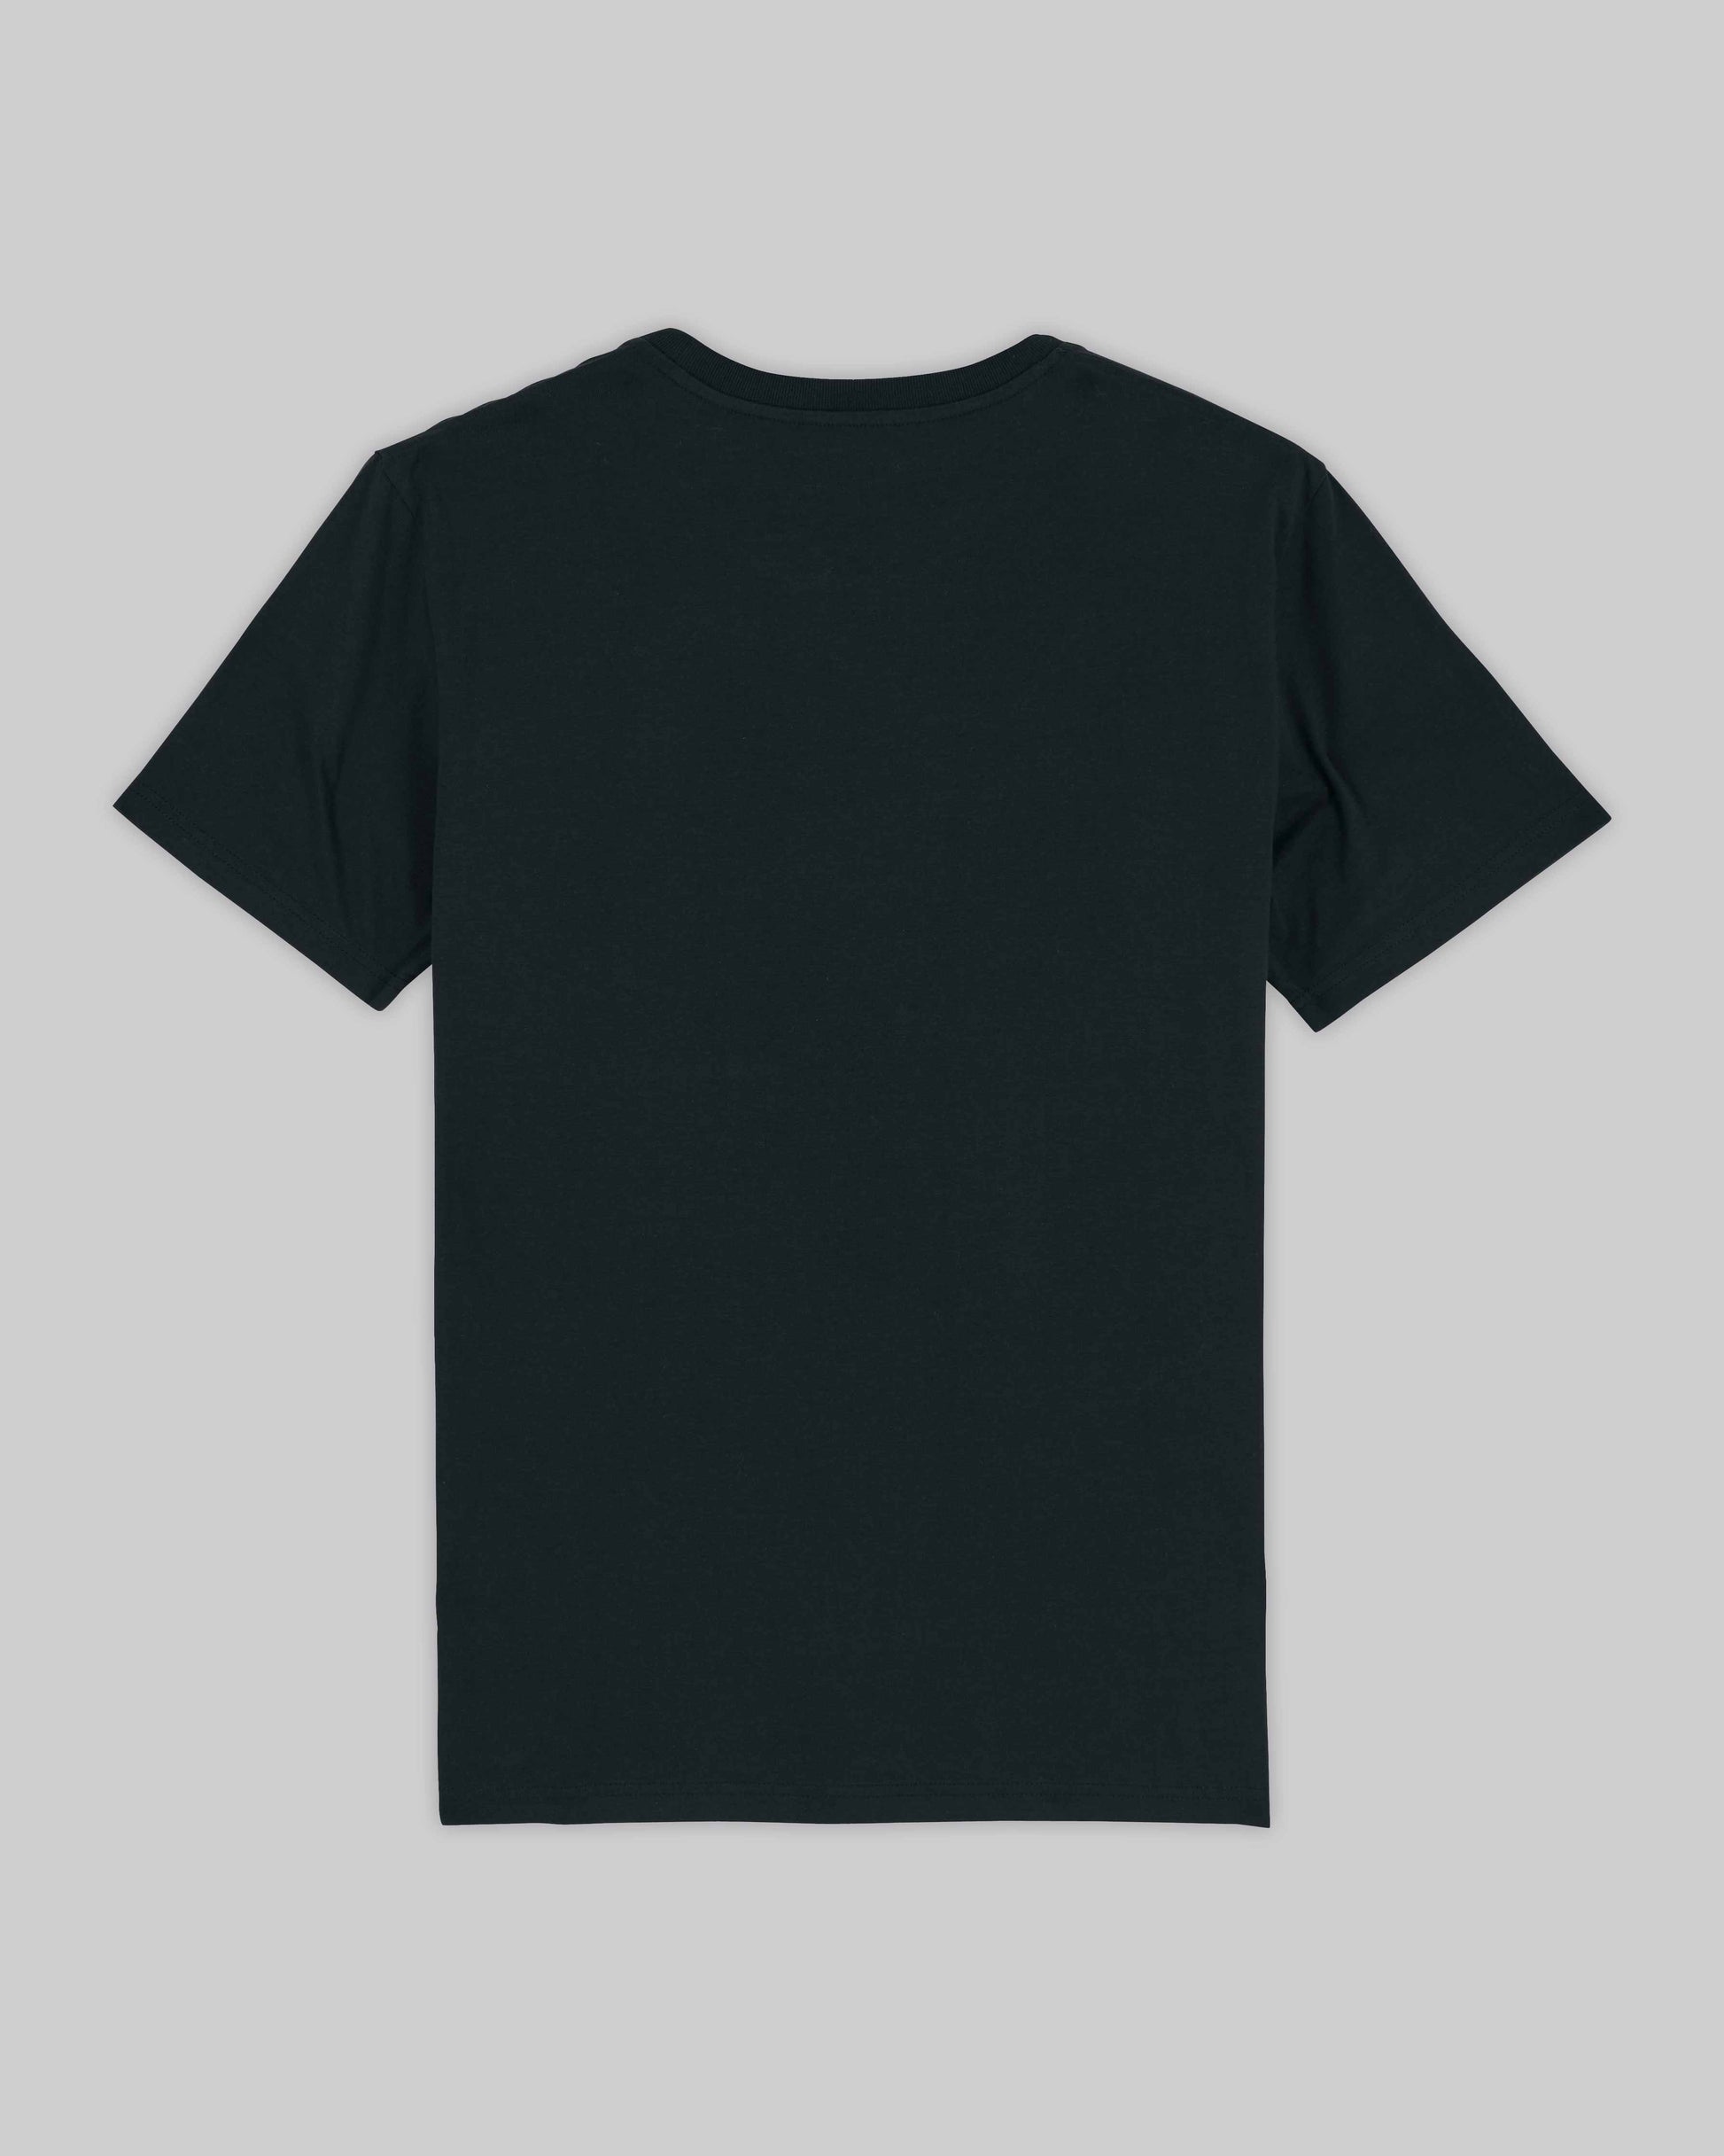 EINHORST® unisex Organic Shirt in Schwarz mit dem Motiv "pride Regenbogen" in der Kombination weißer Regenbogen mit weißer Schrift, Bild von Shirt von hinten